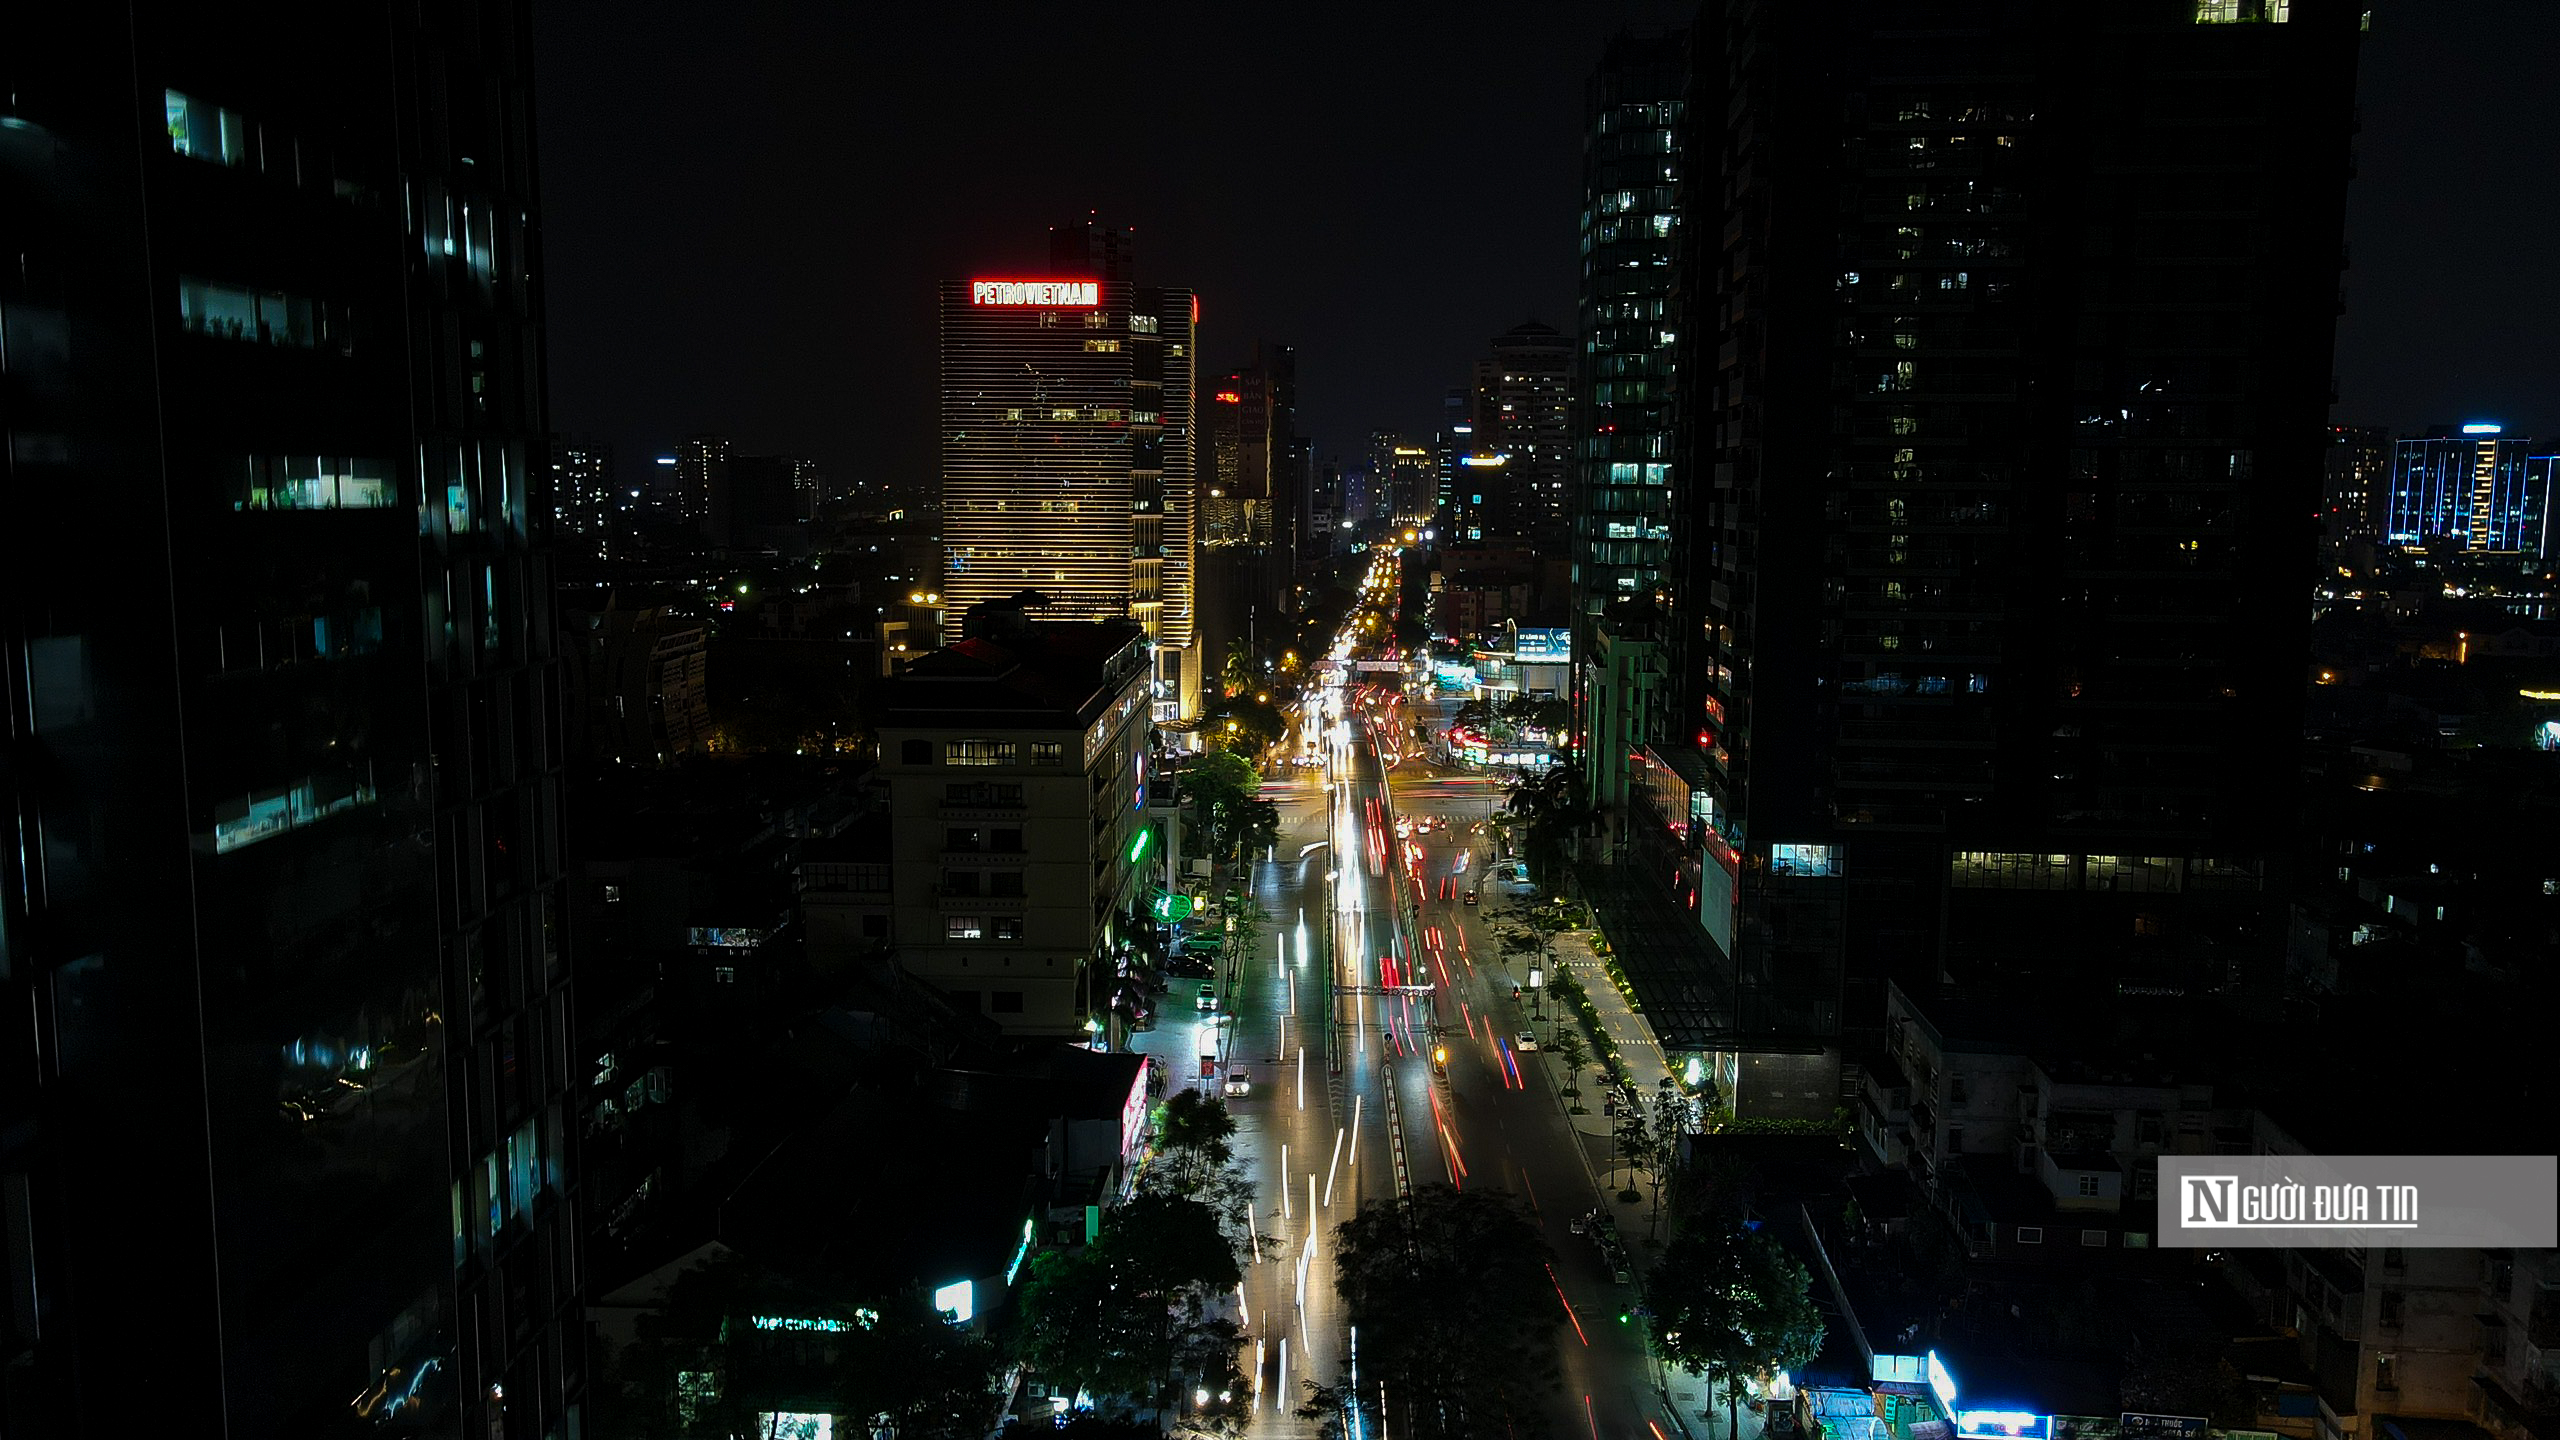 Dân sinh - Hà Nội: Nhiều tuyến đường, tòa nhà tối sầm vì cắt giảm tiêu thụ điện (Hình 12).